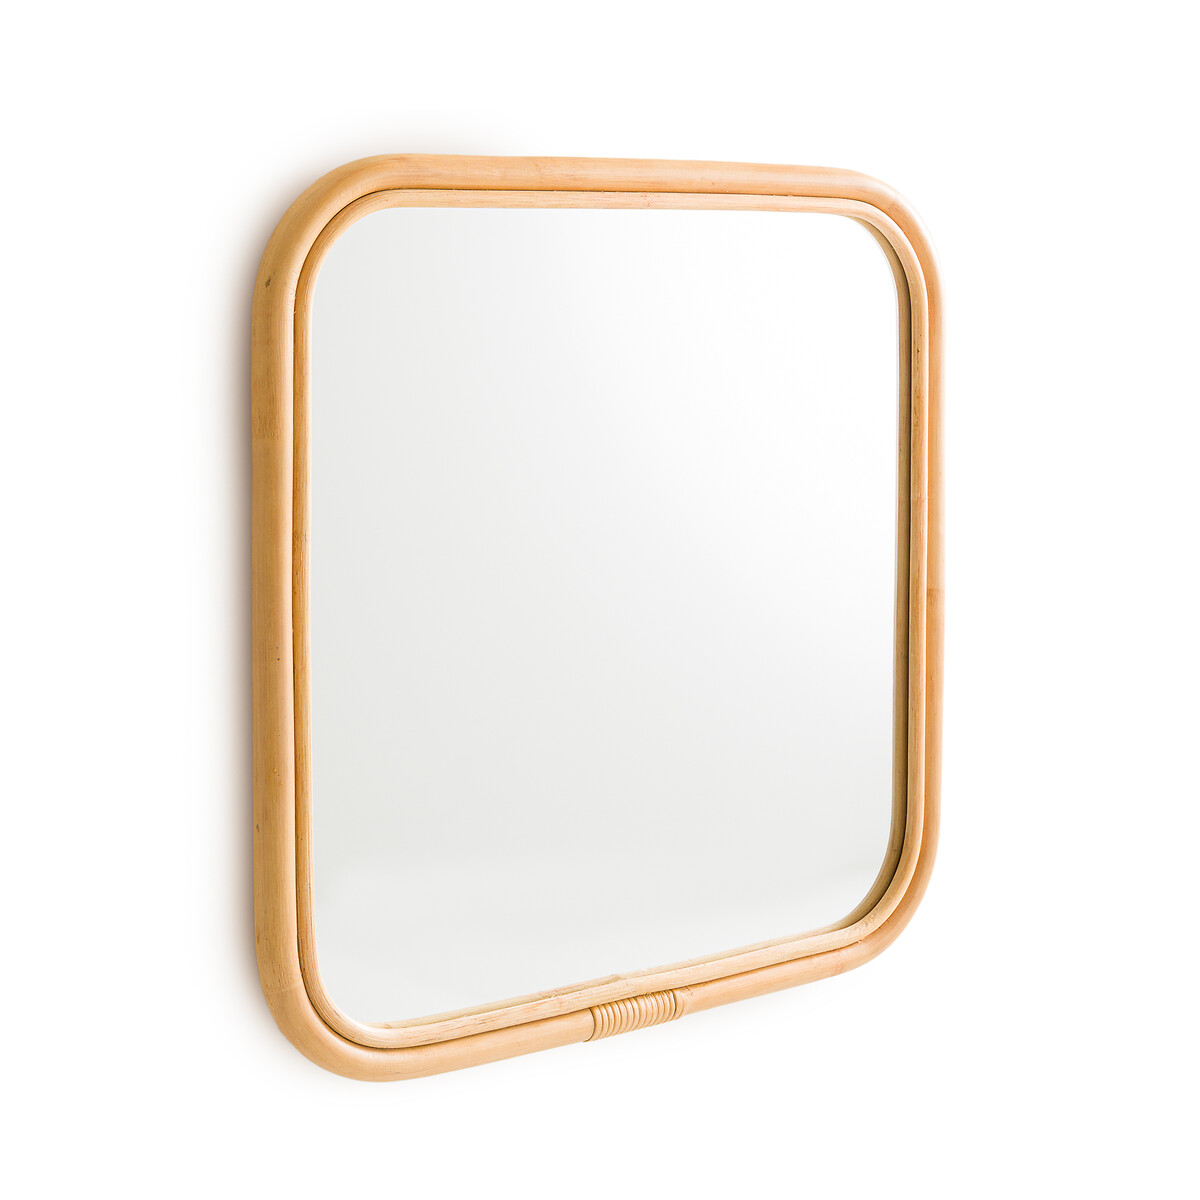 Зеркало квадратное с отделкой ротангом 60x60 см Nogu единый размер бежевый зеркало круглое из ротанга 60 см nogu единый размер бежевый